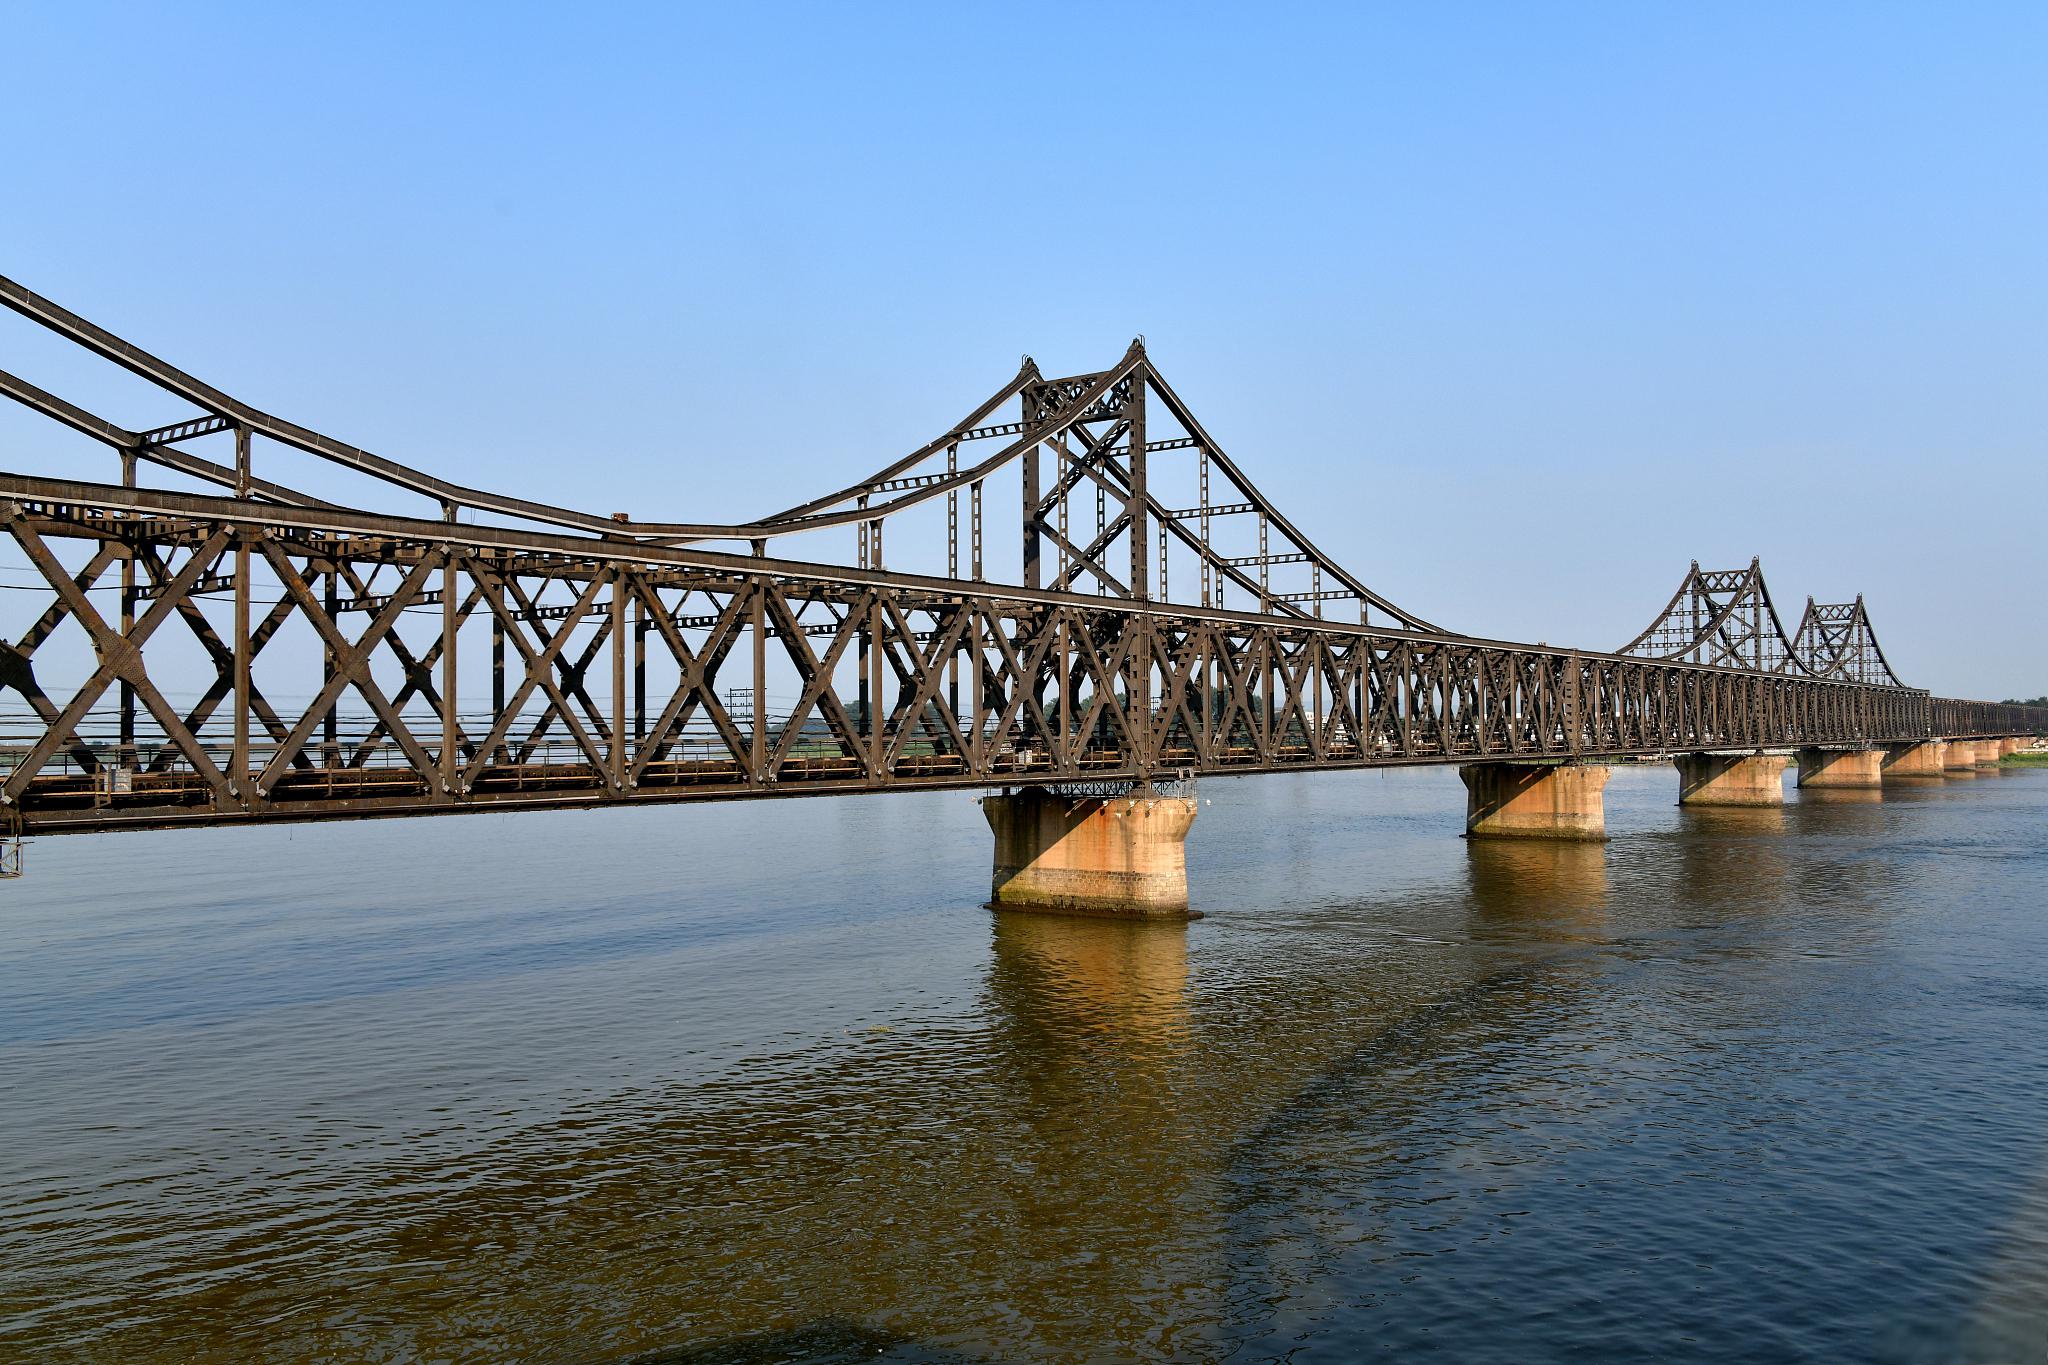 鸭绿江断桥旅游攻略 鸭绿江断桥位于中国辽宁省丹东市振兴区江岸路